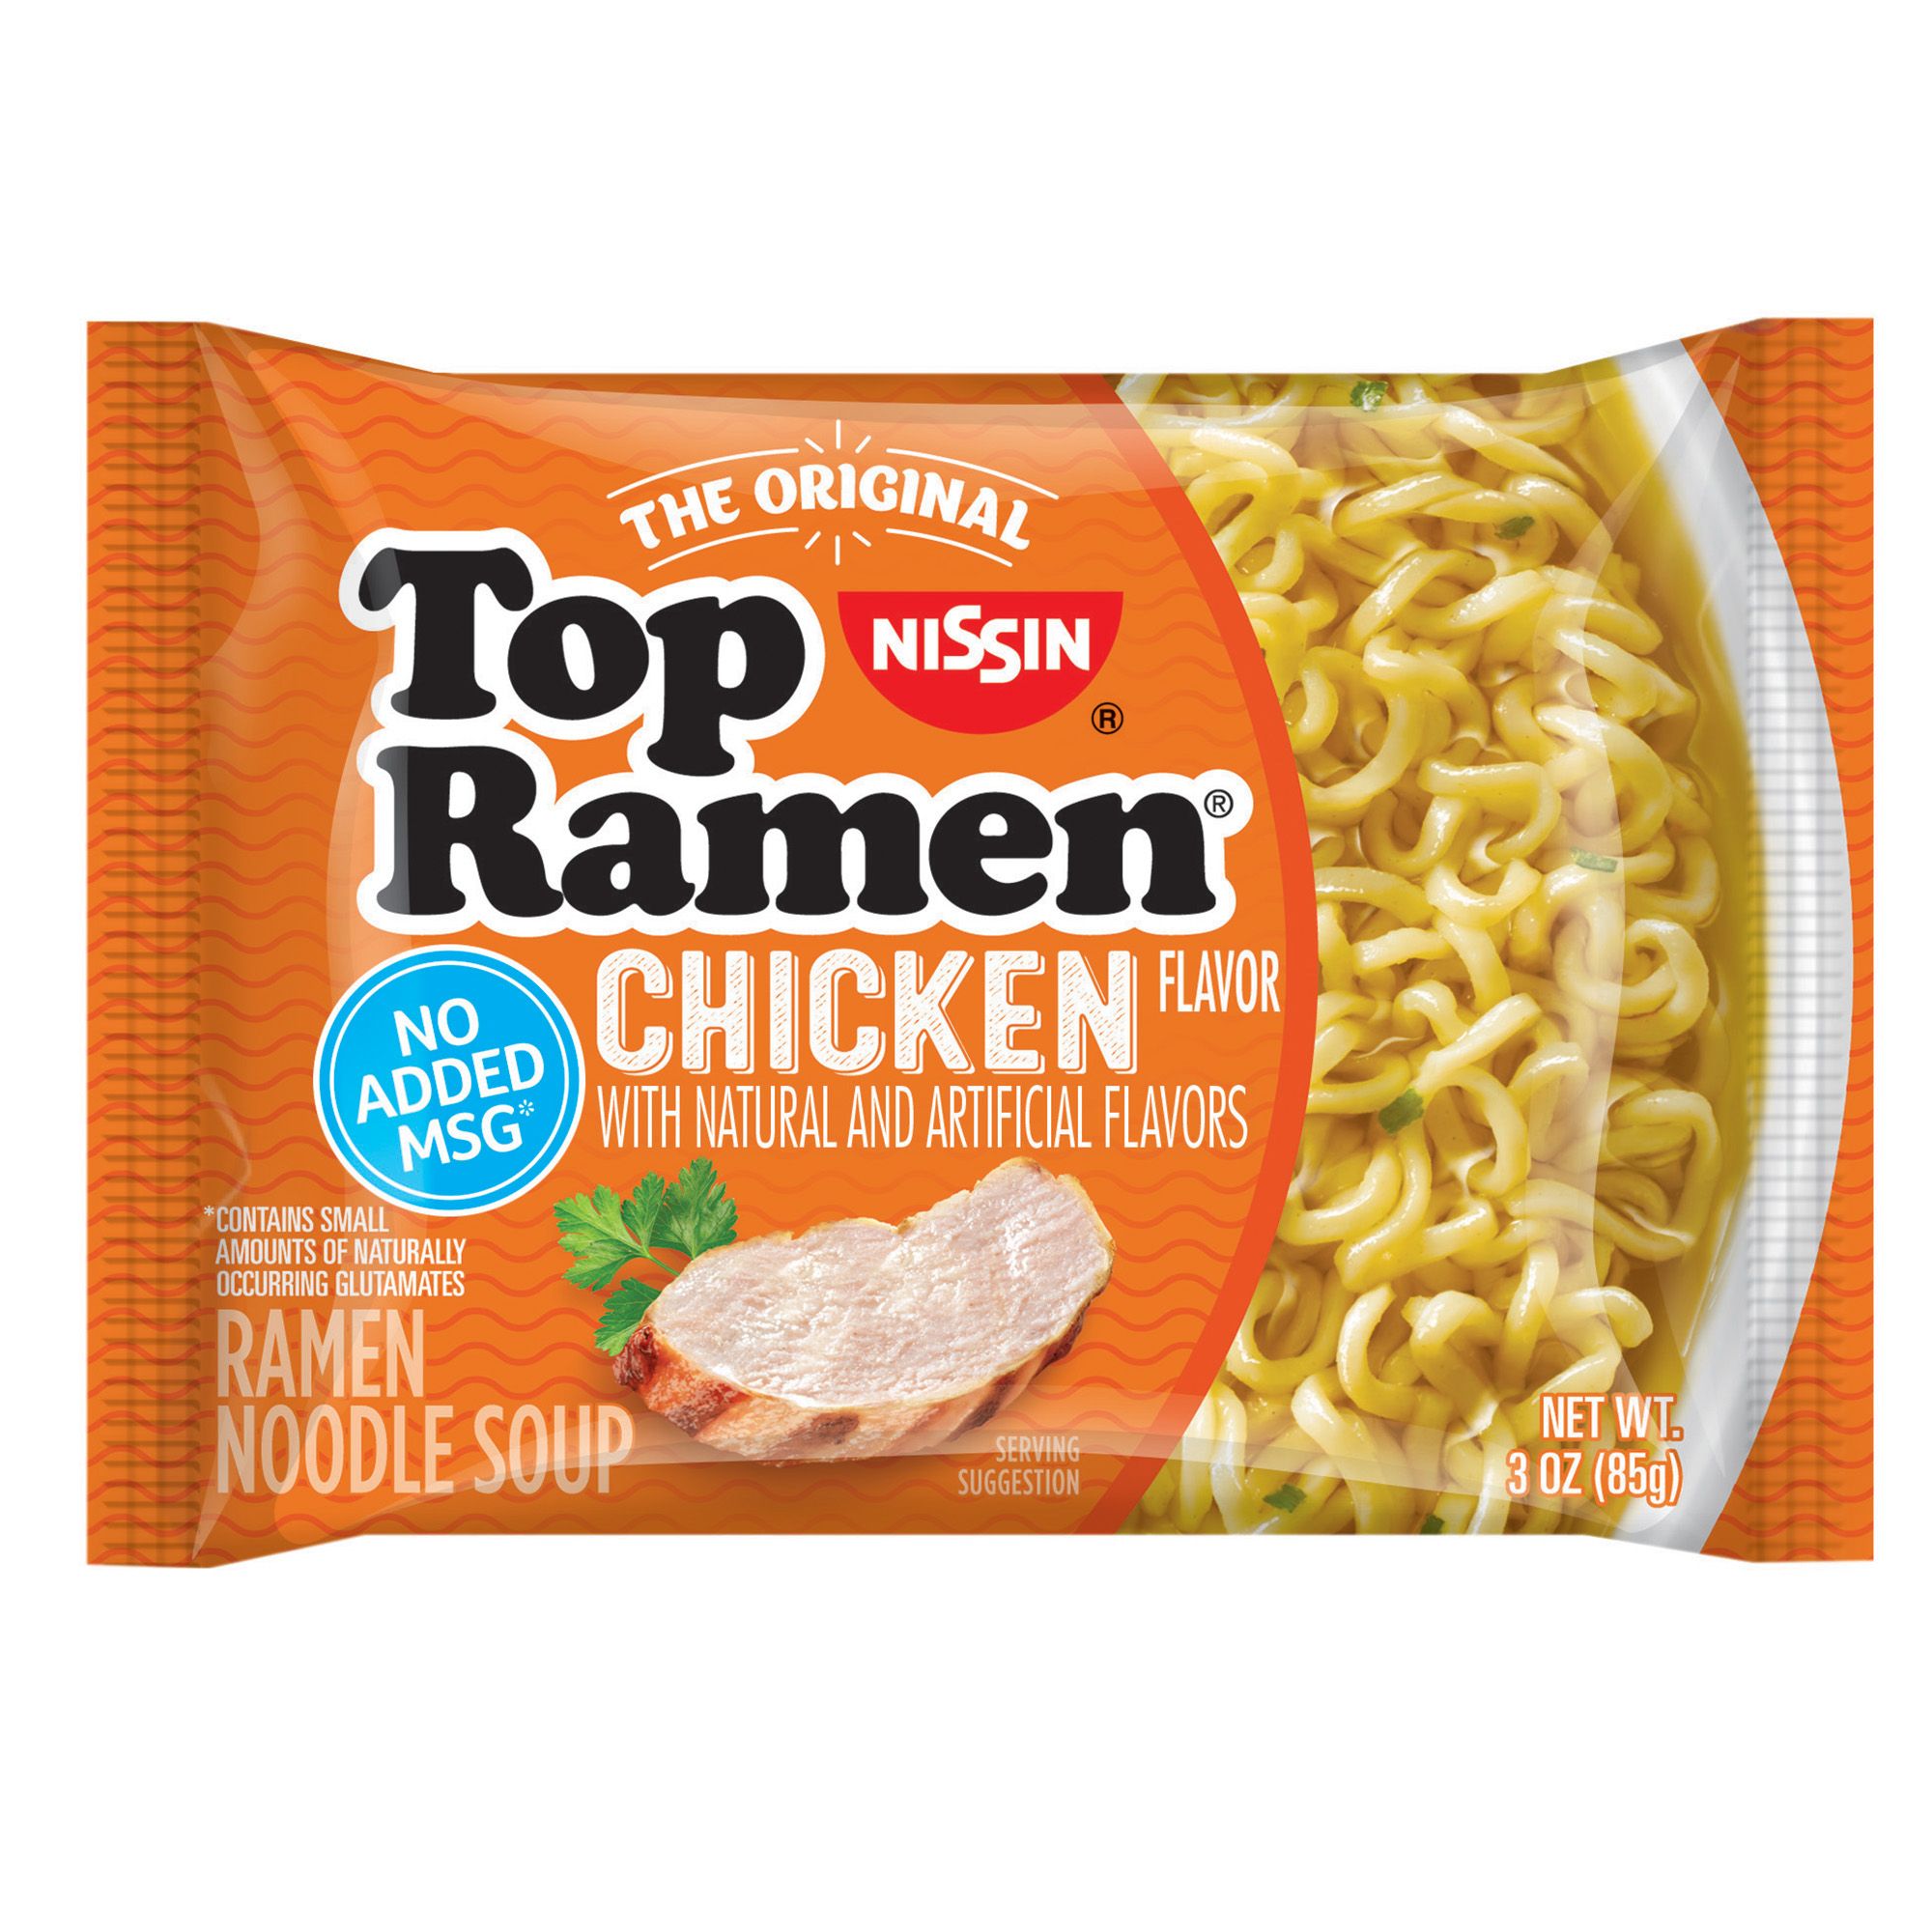 Nissin Top Ramen Chicken Flavor Noodle Soup 48 pk./3 oz.